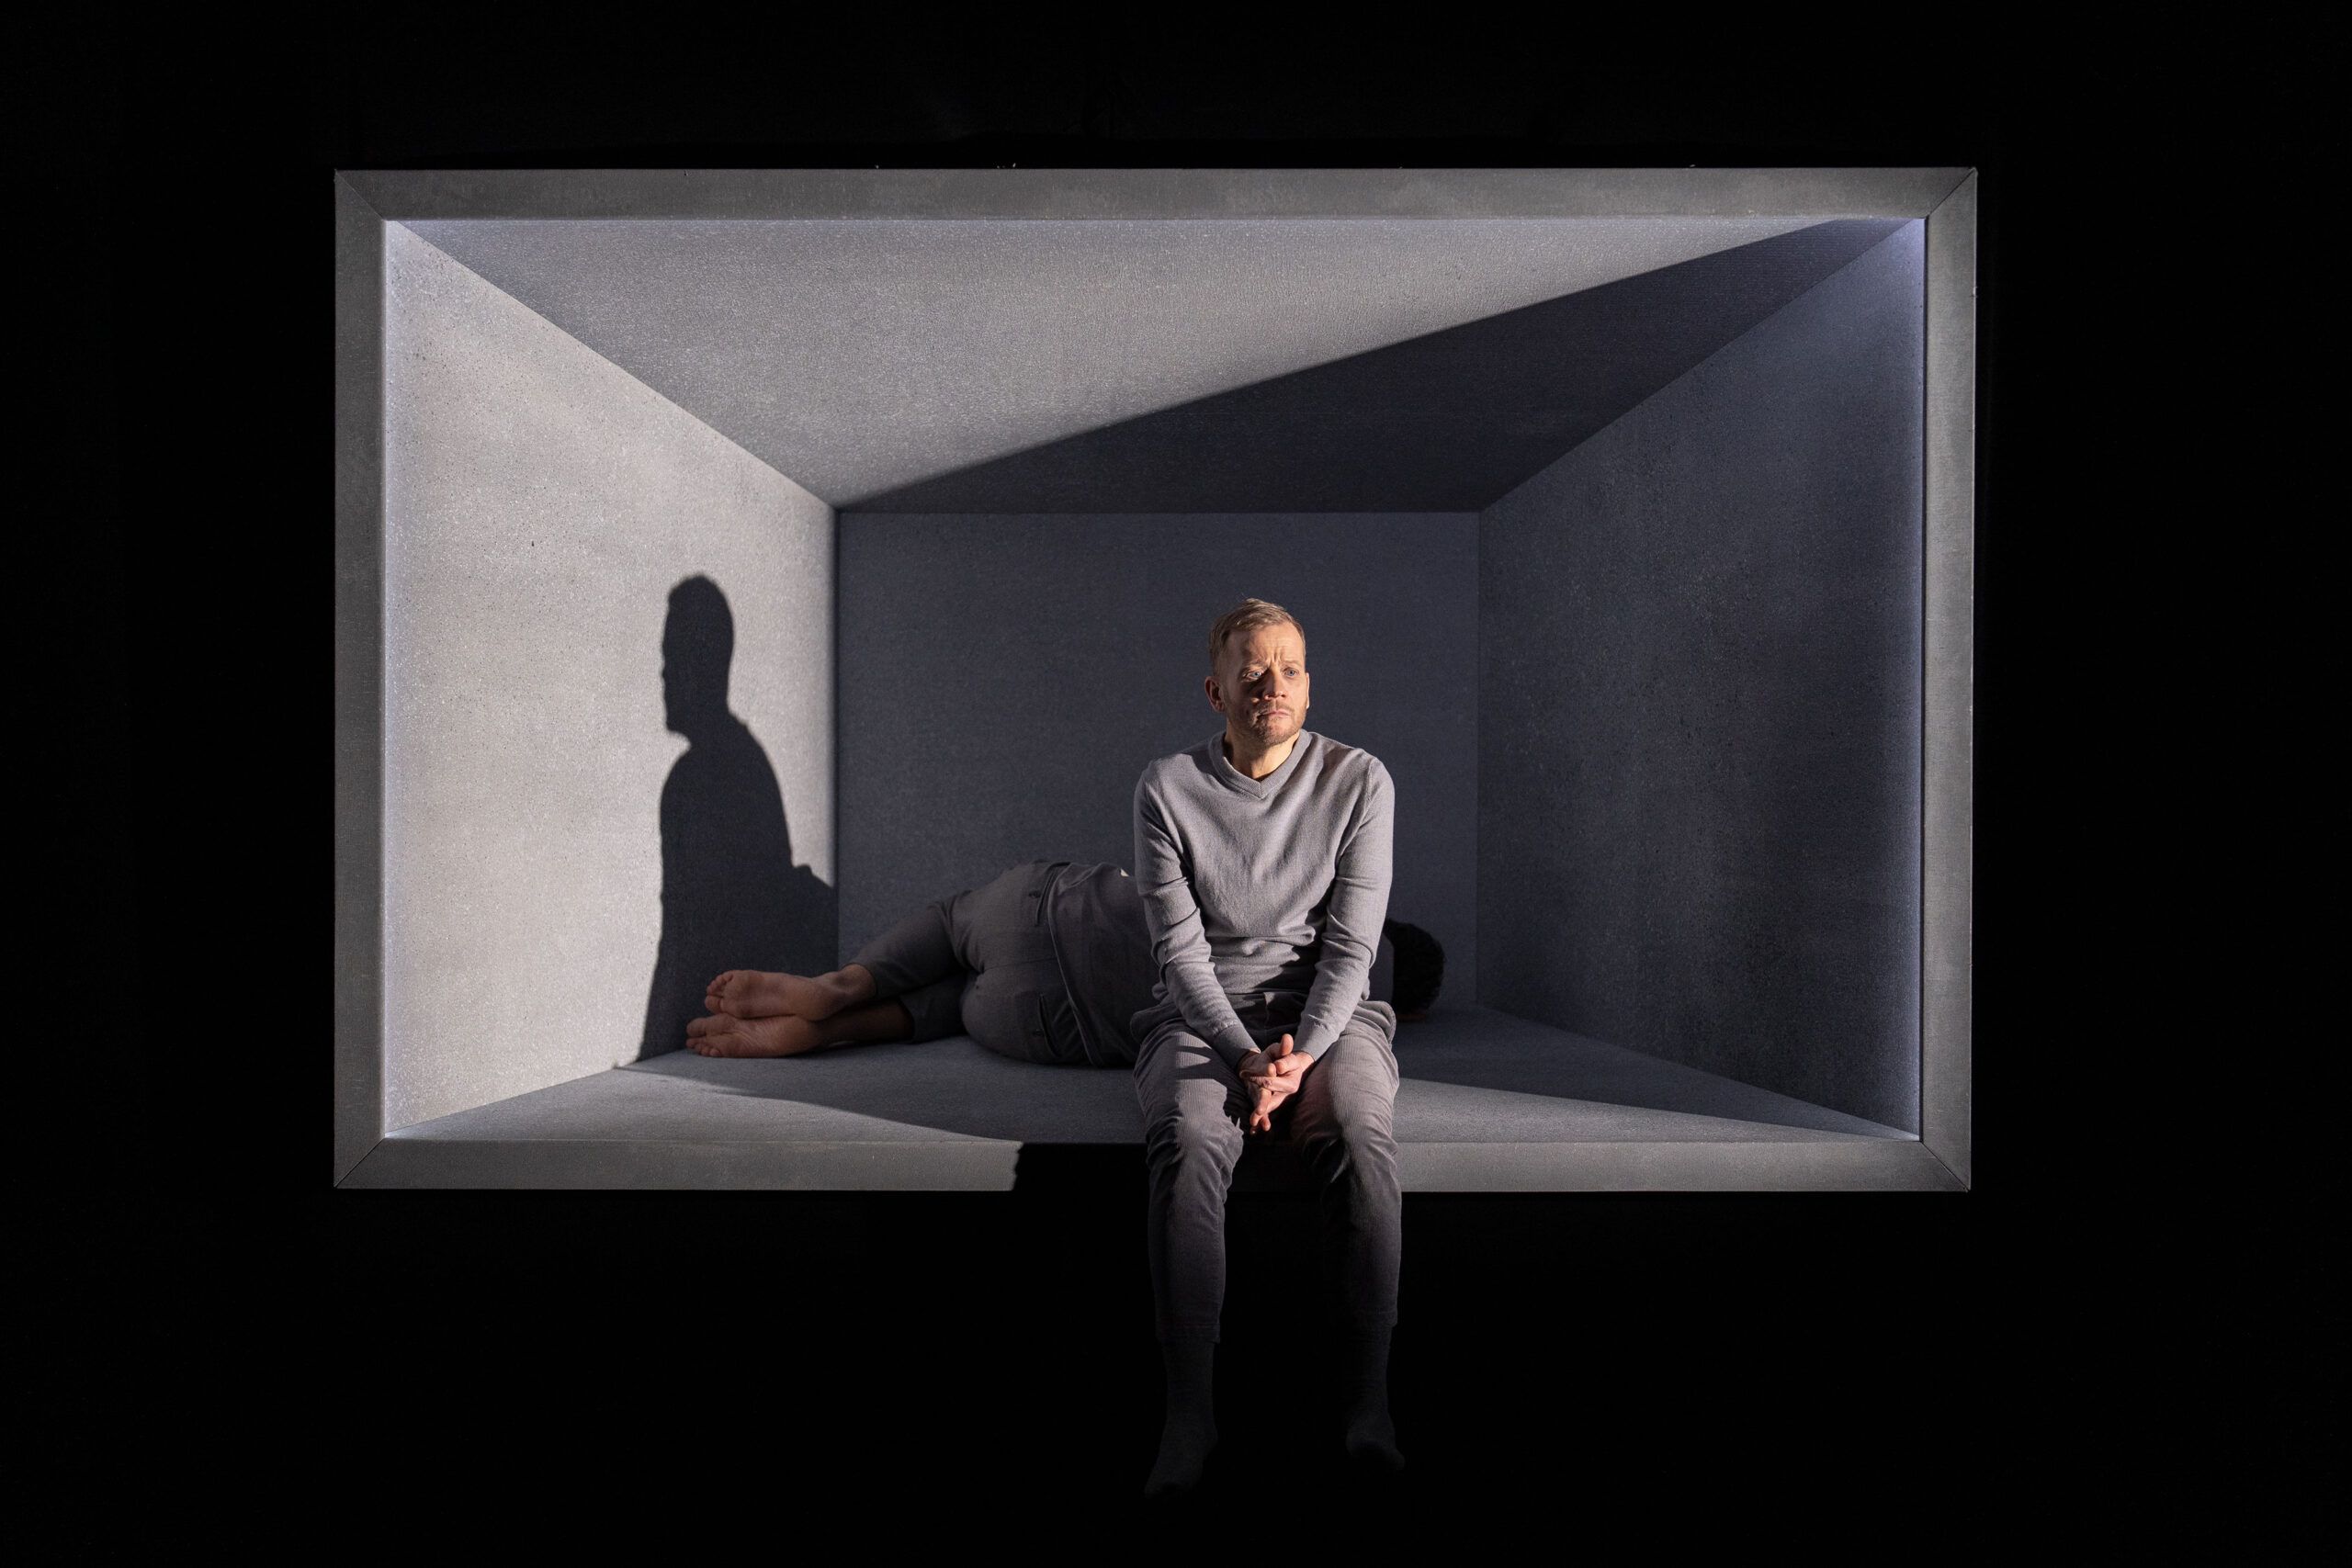 Skuespillere Henrik Rafaelsen og Morten Espeland som karakterene Den eine og Den andre i Eg er vinden. De er ikledd grå klær, og sitter i en grå, lysende, svevende boks.